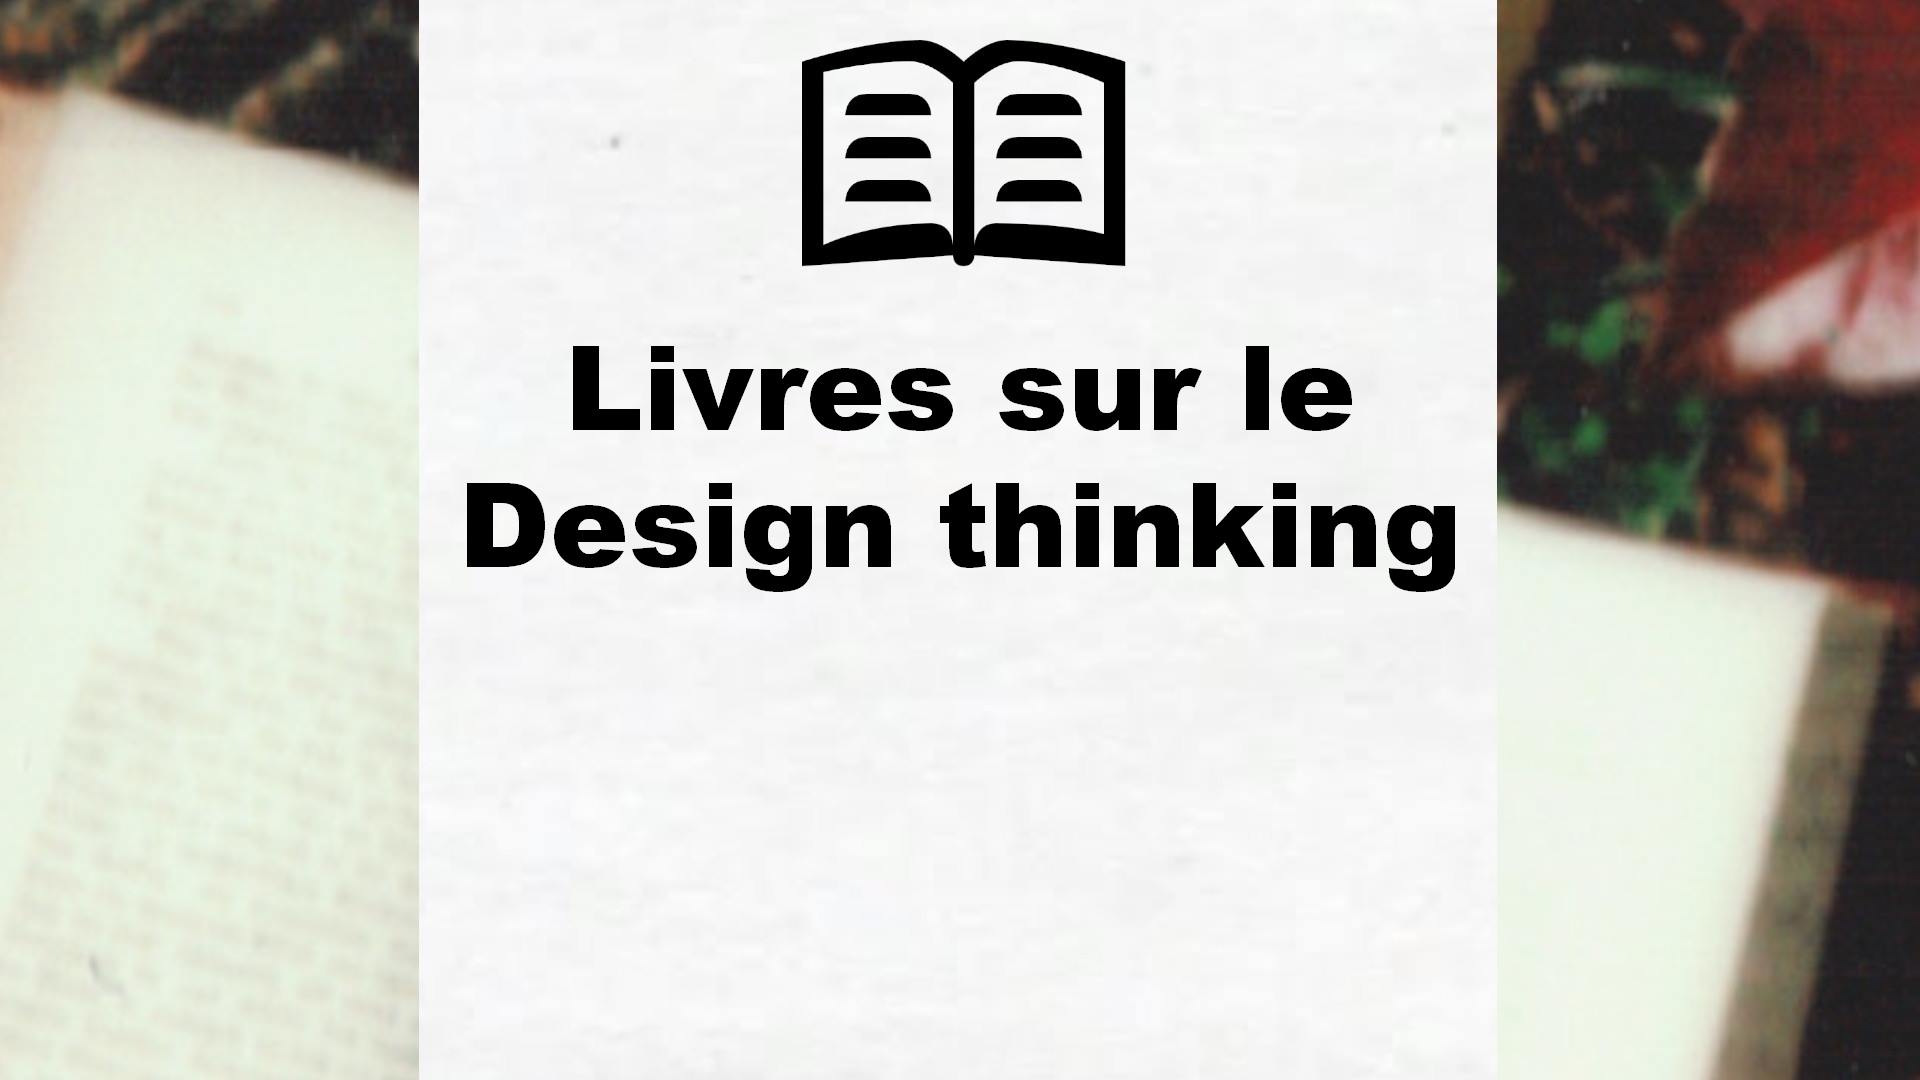 Livres sur le Design thinking